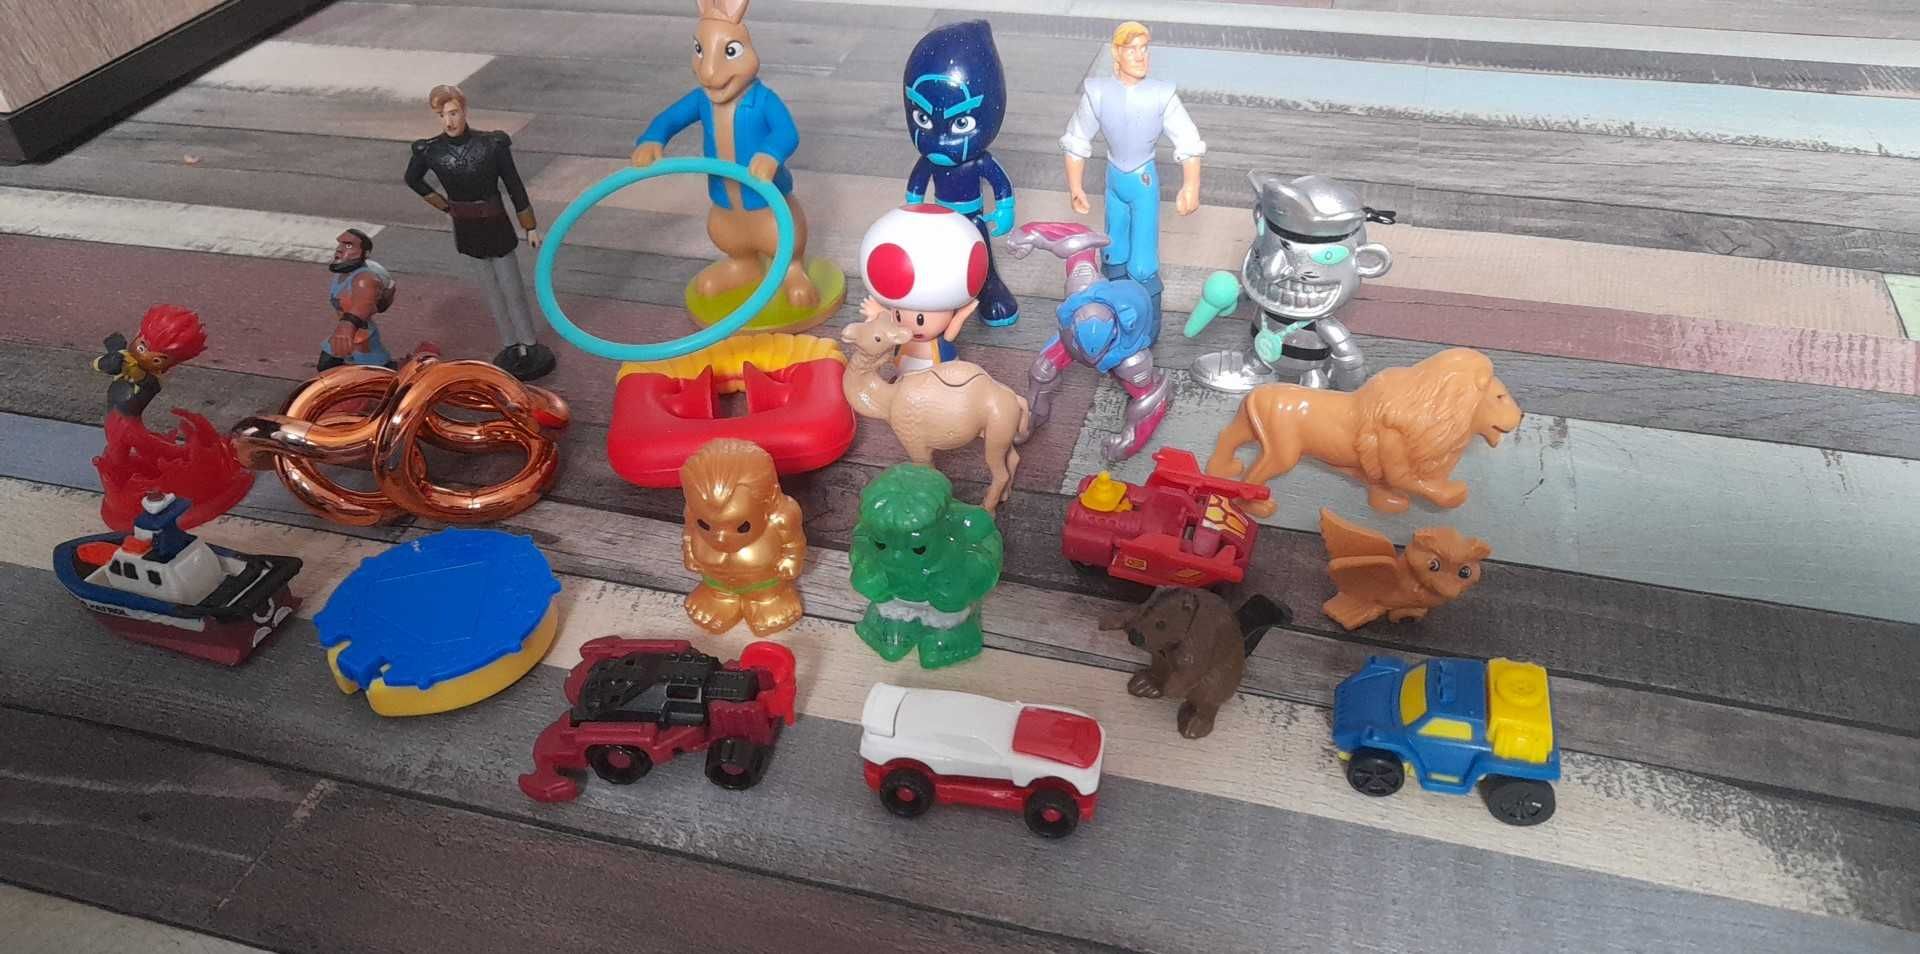 Lot figurine de colectie si joaca copii